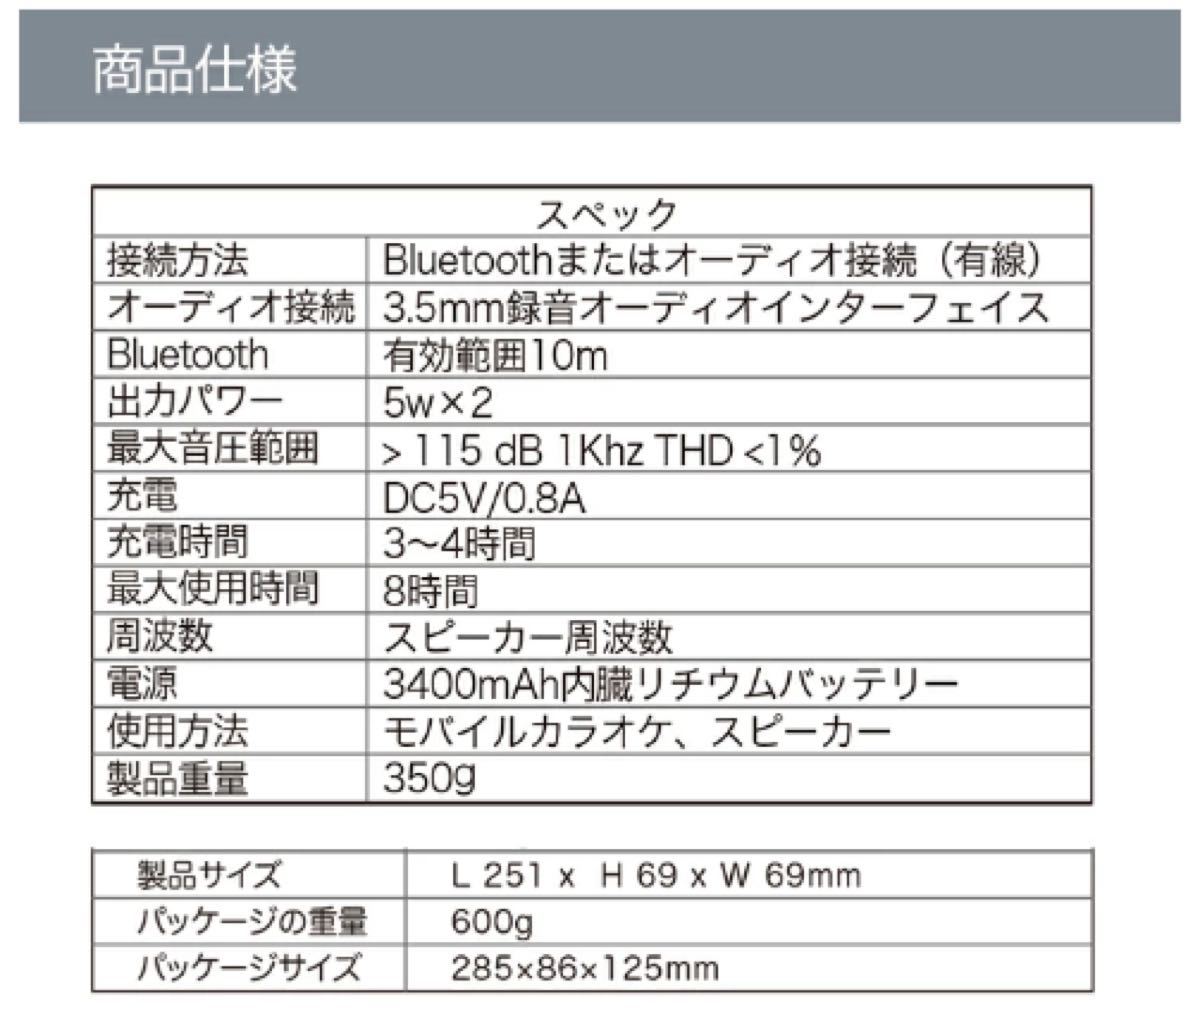 【新品未使用】スマオケ スマホカラオケ マイクスピーカー コードレス Bluetooth